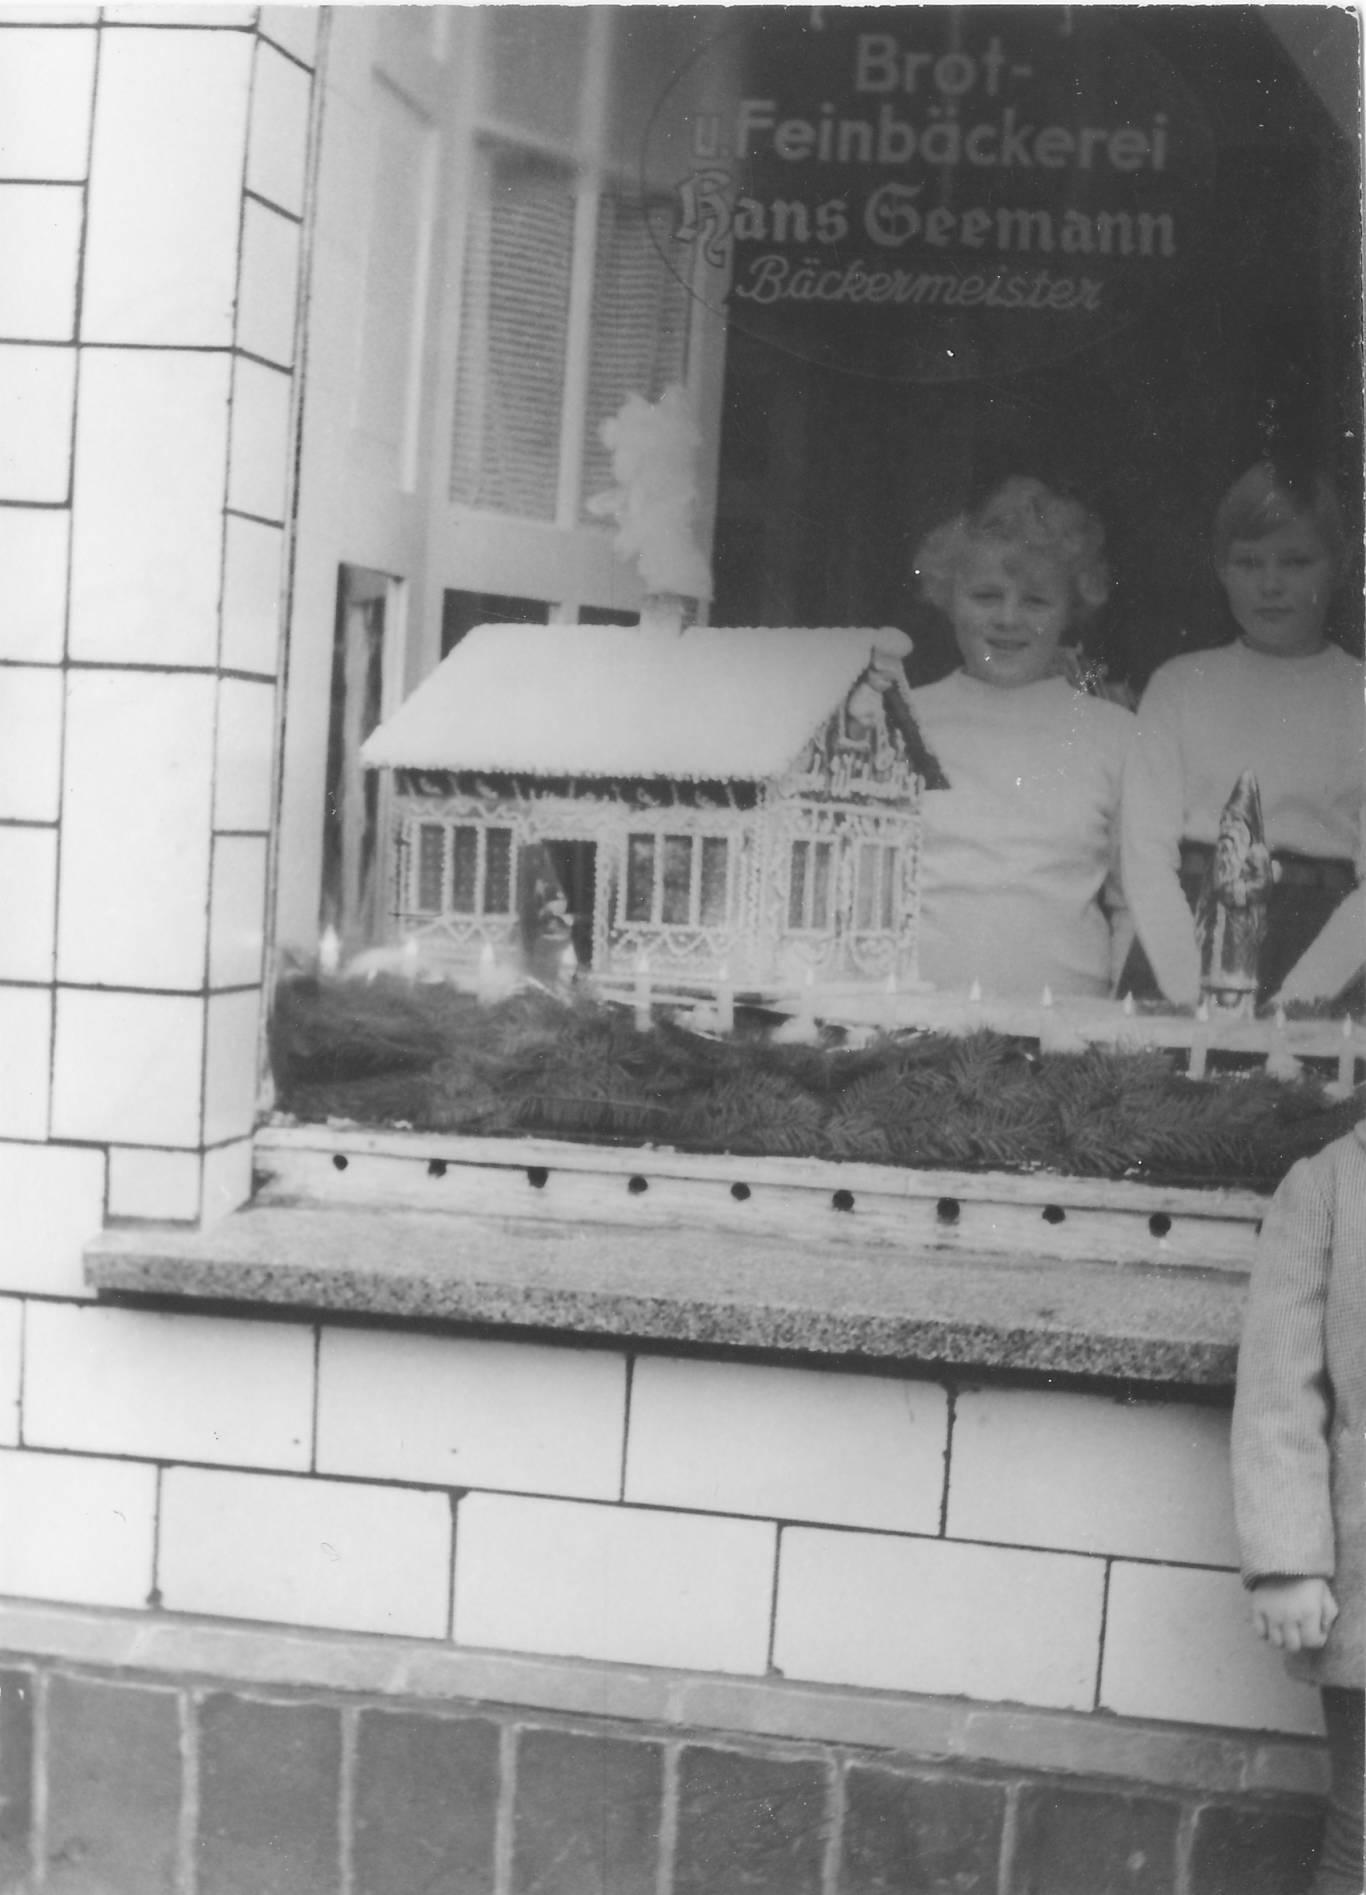 Schaufenster der Bäckerei Hans Seemann, im Hintergrund Tochter Anke Seemann.